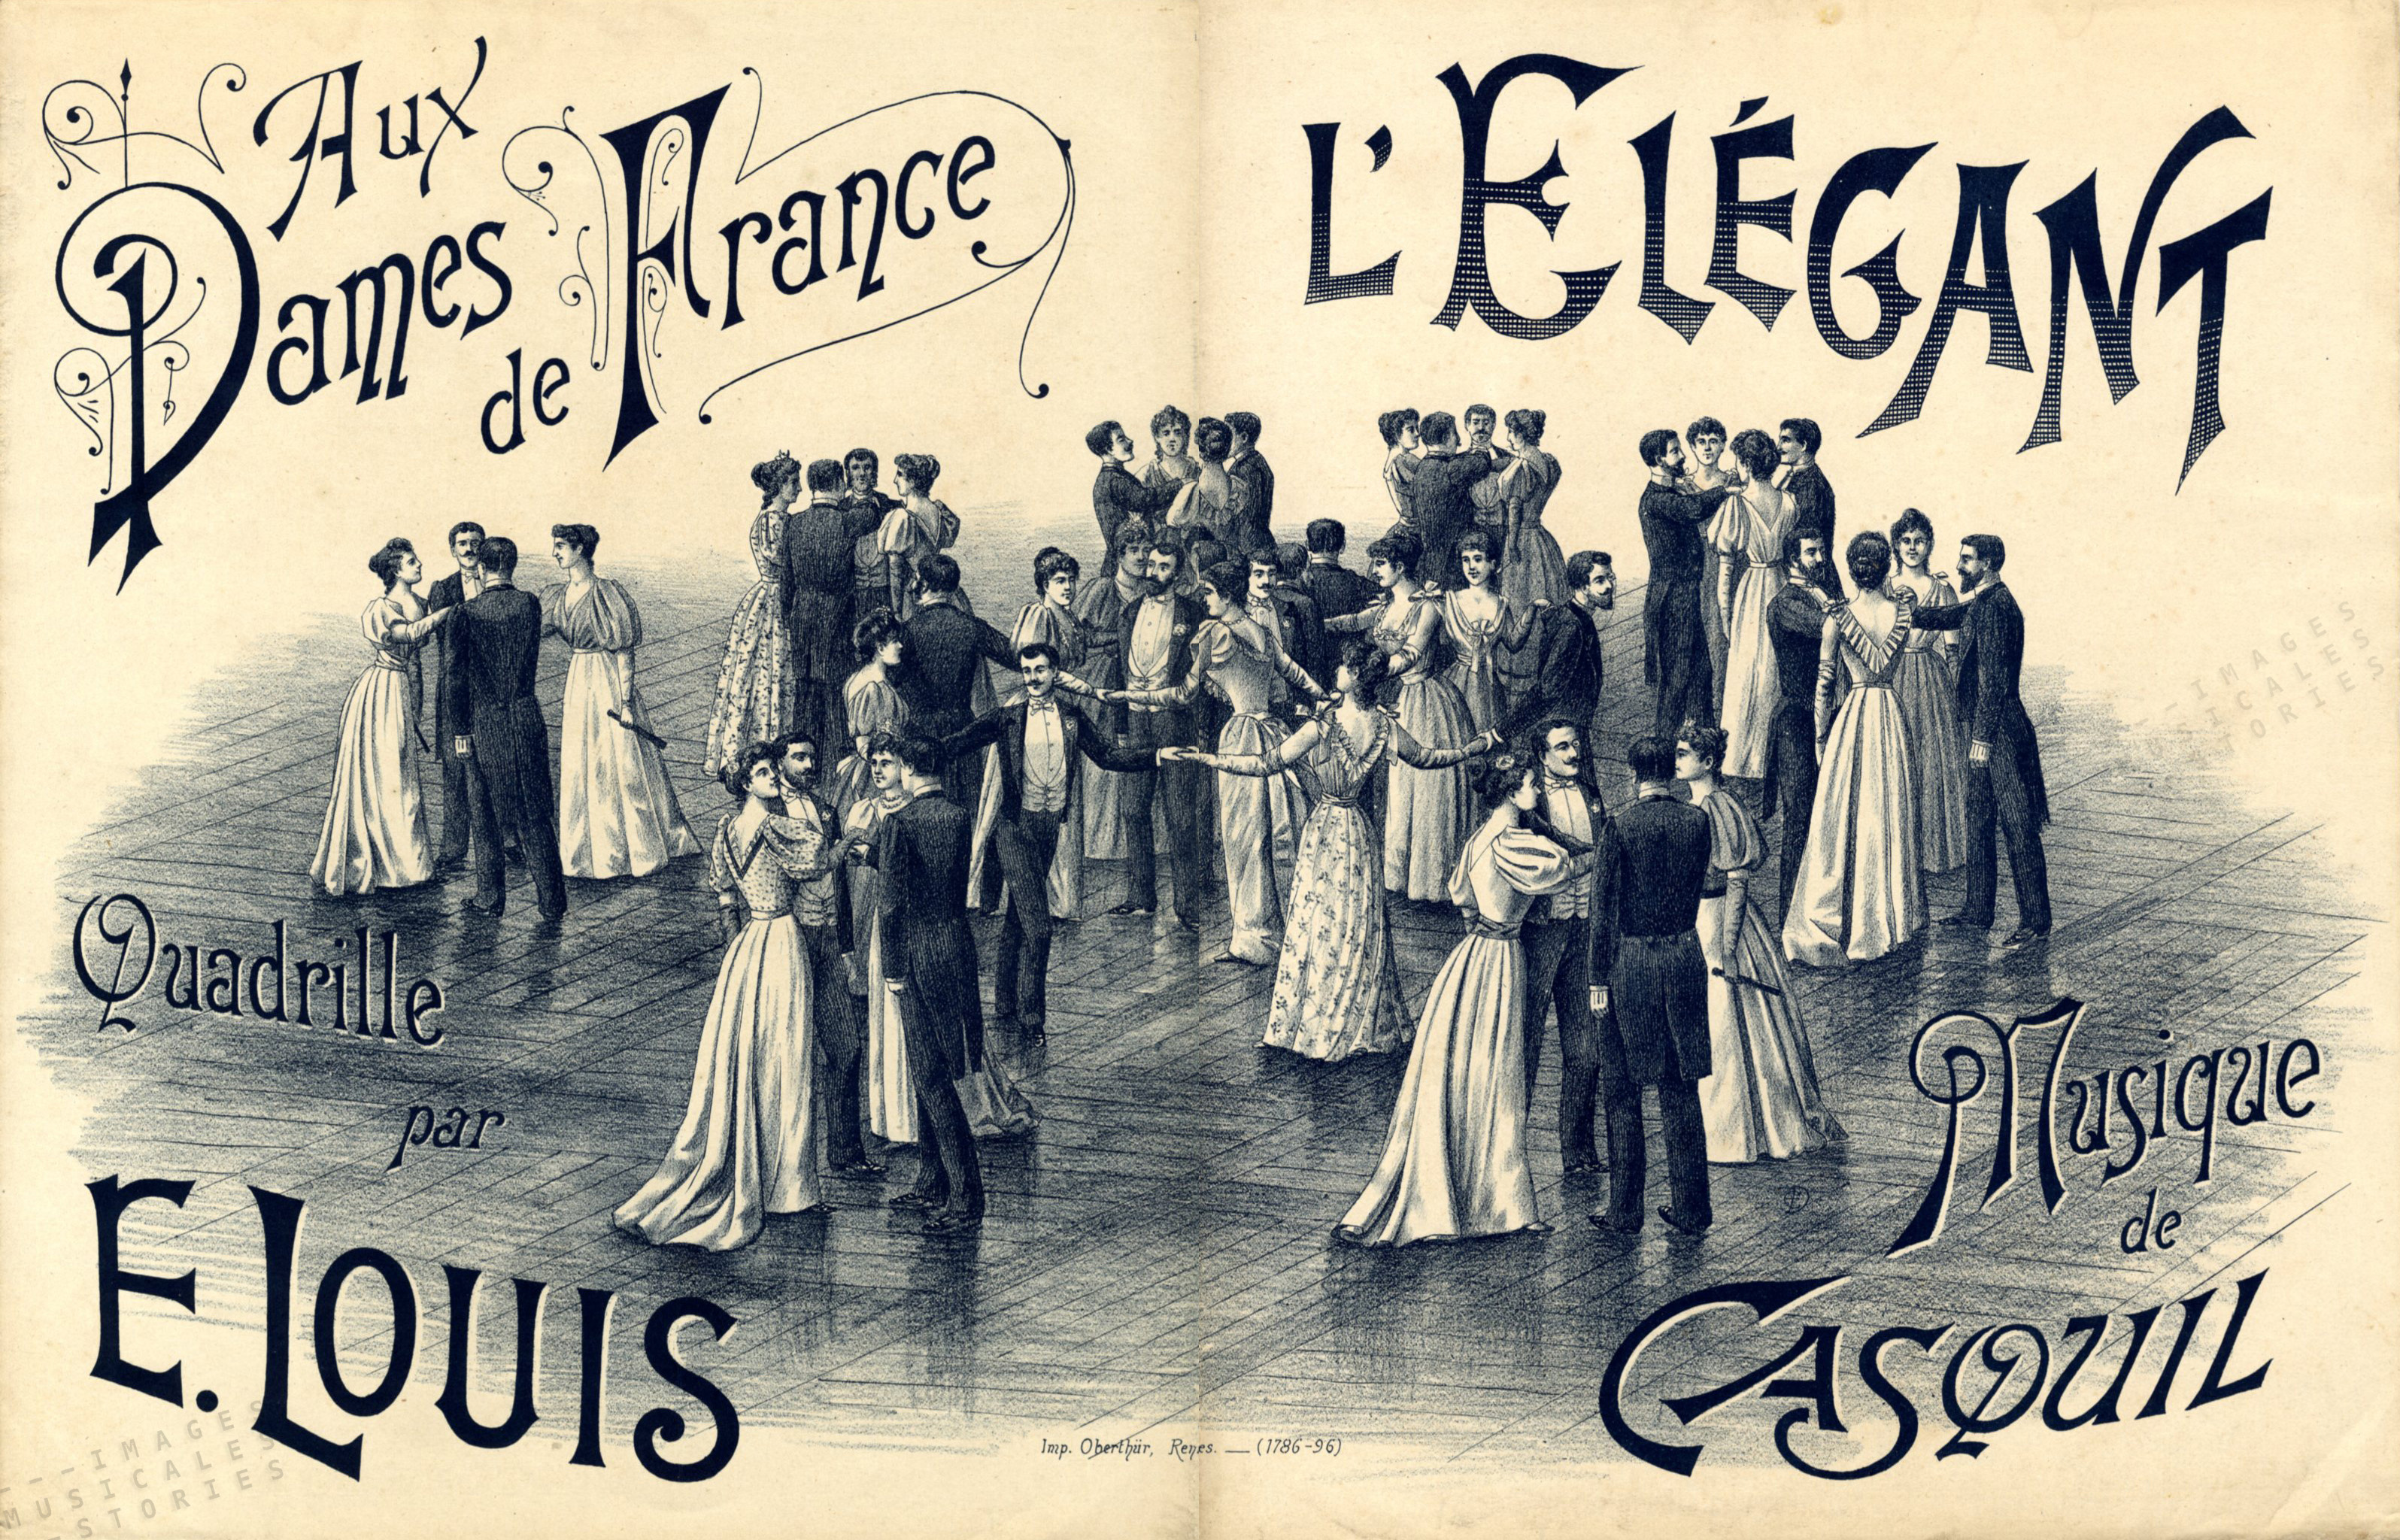 'l'Elégant - quadrille: Aux dames de France', music by Casquil, dance by E. Louis (publisher unknown, s.d., illustration signed E.D. monogram)